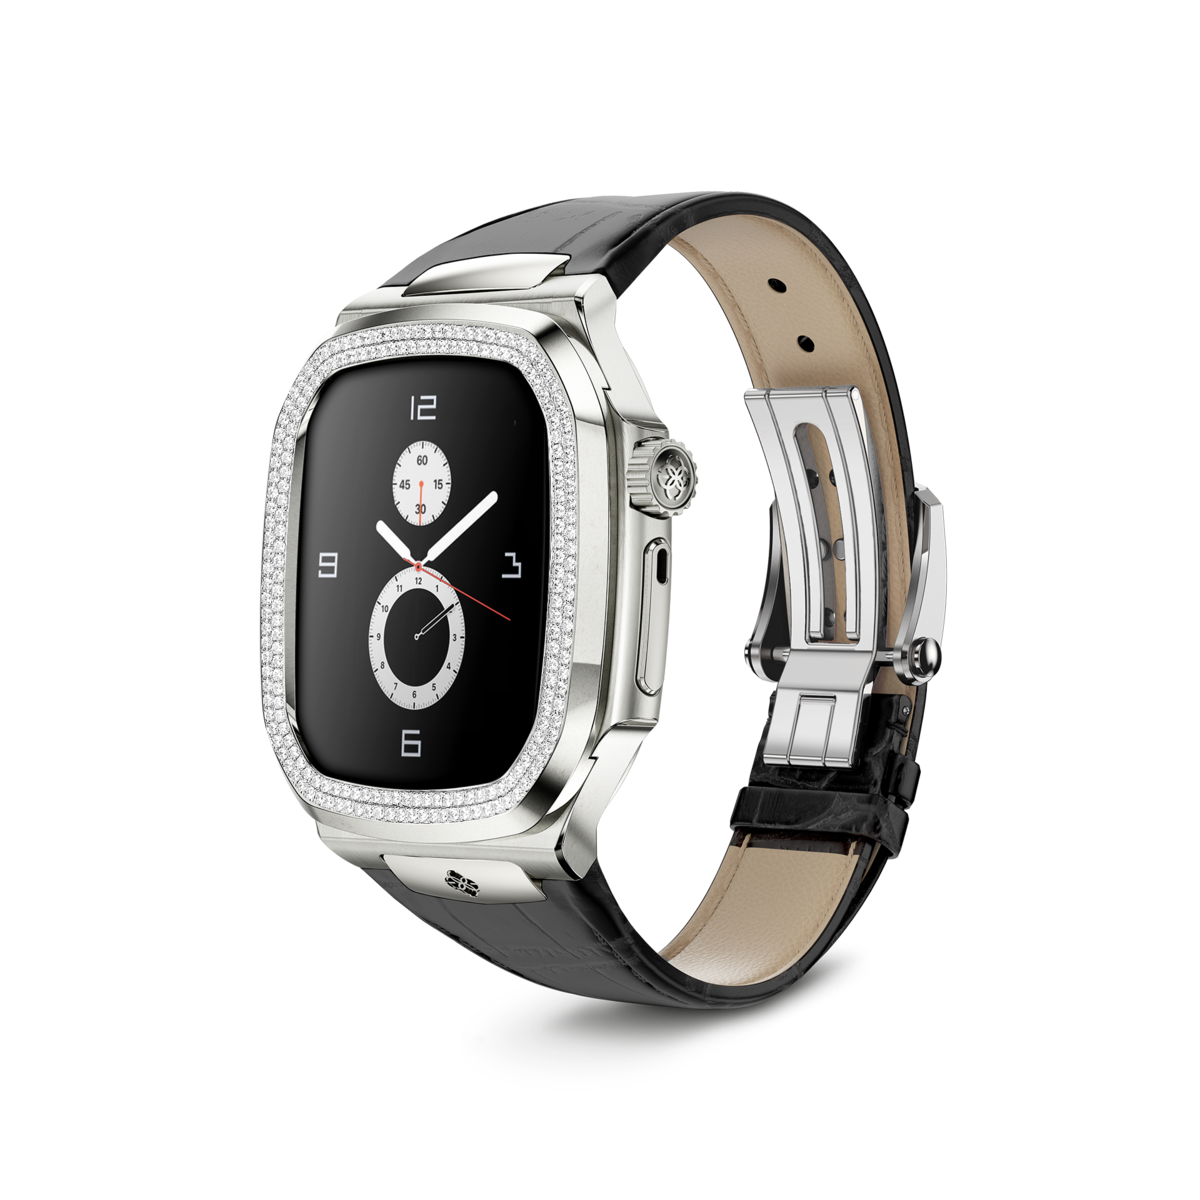 골든컨셉 로얄에디션 45MM - Leather MD (모이나사이트 다이아몬드) 애플워치 케이스 Apple Watch Case - ROL45 - SILVER MD